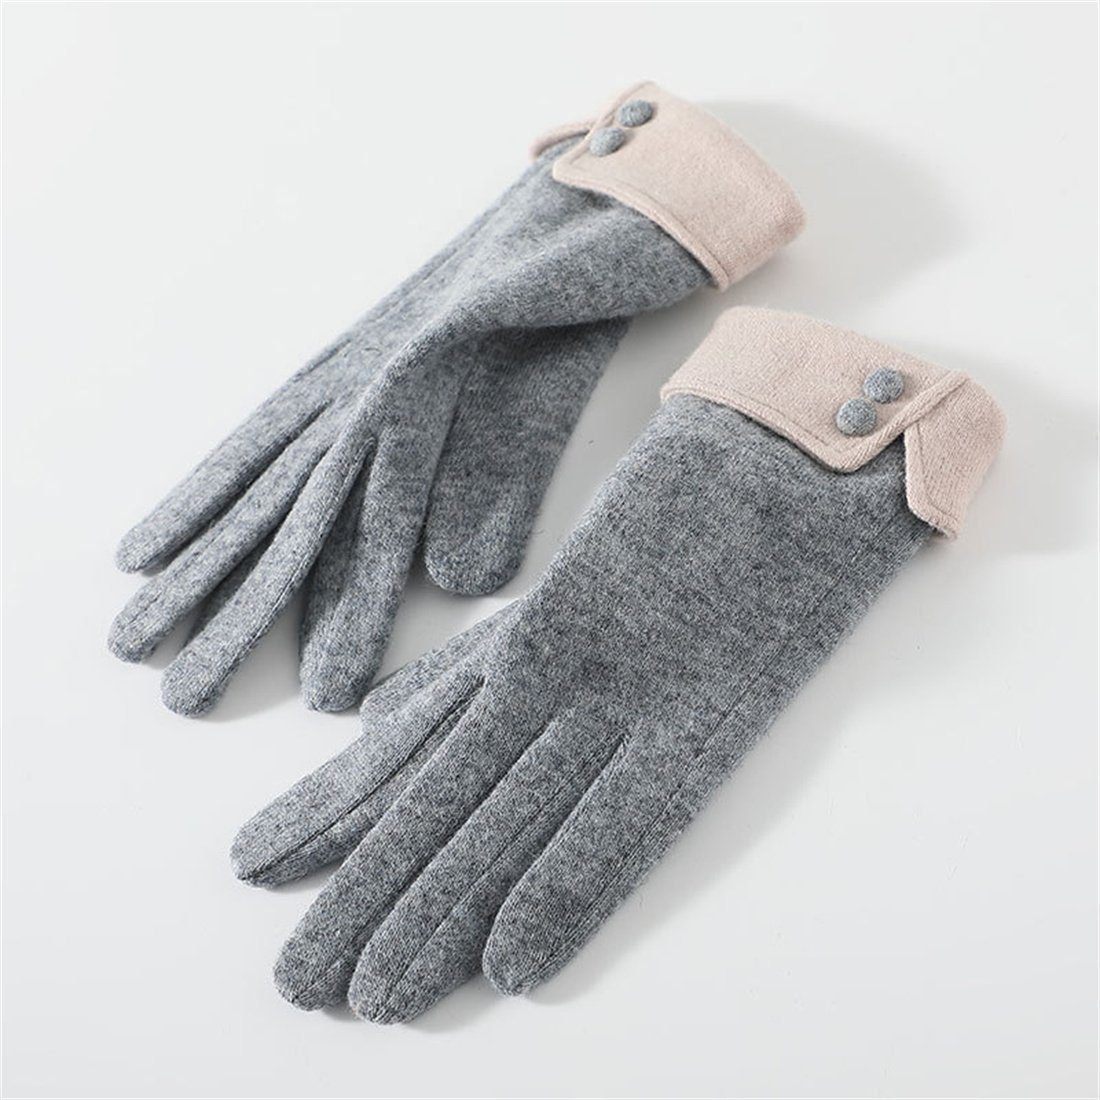 Winter warme Fleecehandschuhe Damen Reithandschuhe Grau Kaschmir Handschuhe,faux DÖRÖY gepolsterte